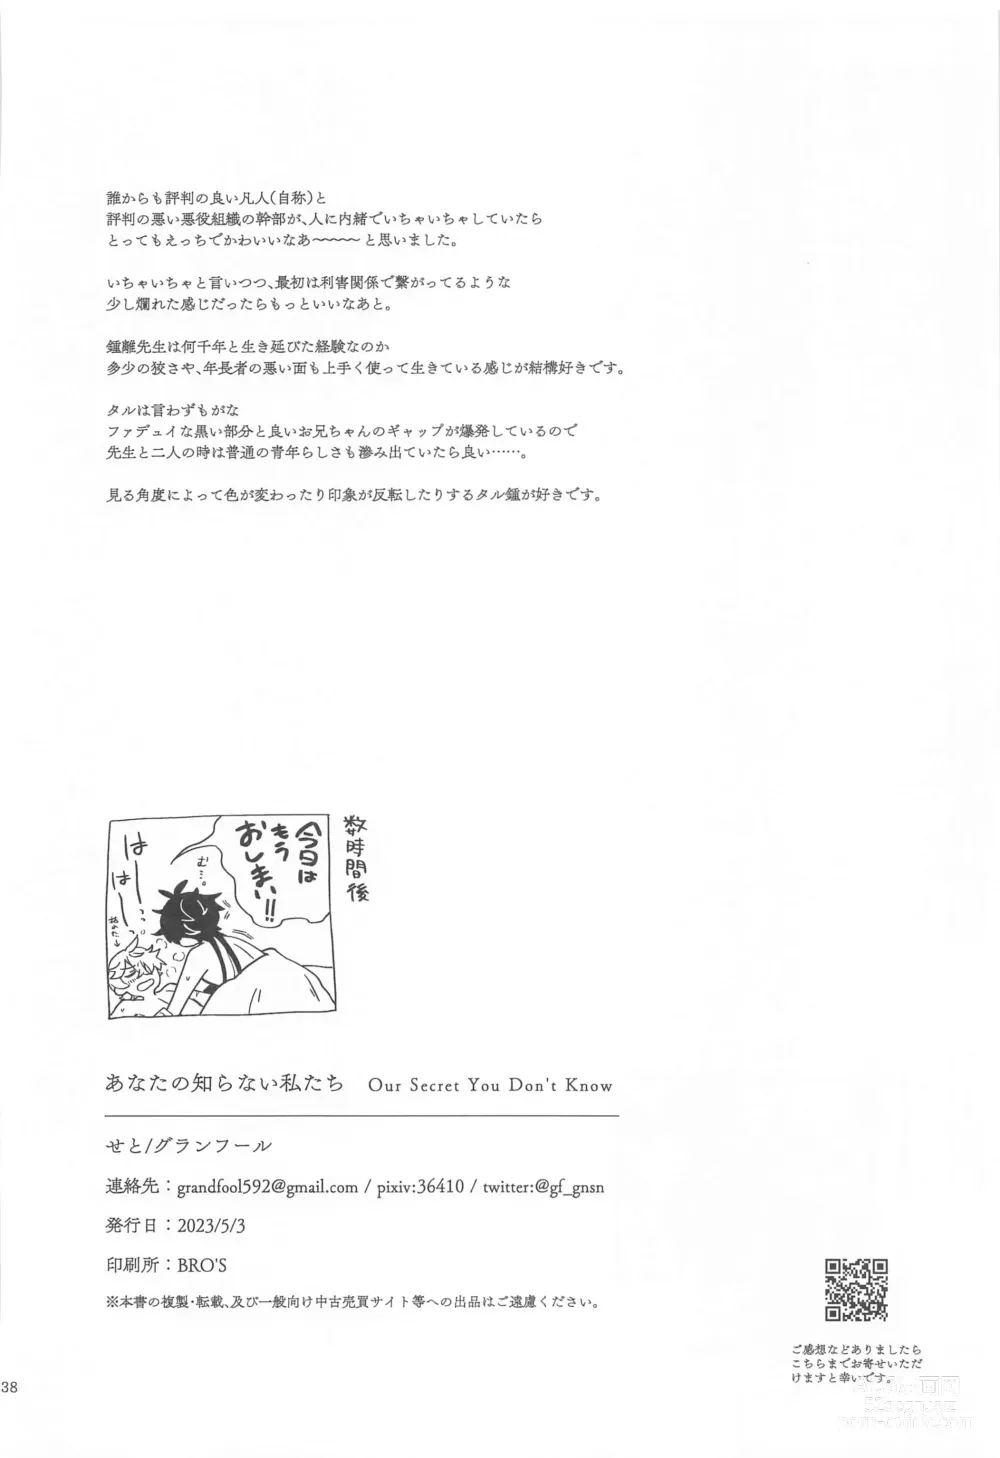 Page 36 of doujinshi Anata no Shiranai Watashi-tachi - Our Secret You Dont Know